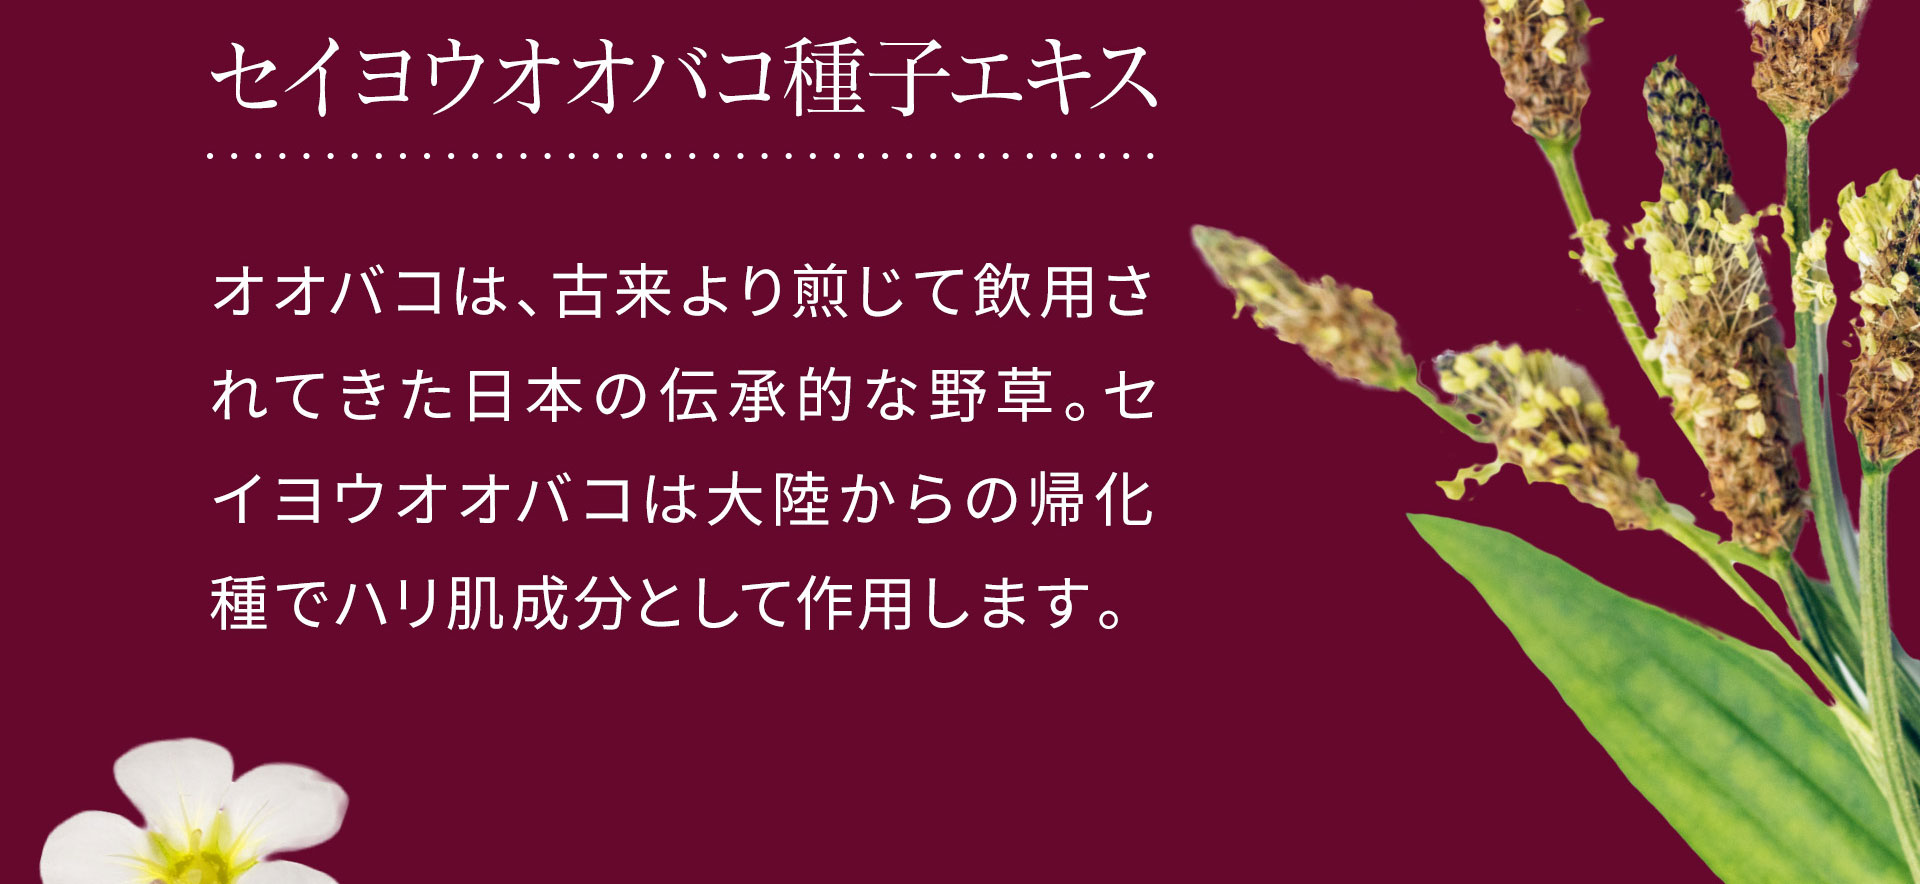 セイヨウオオバコ種子エキス。オオバコは、古来より煎じて飲用されてきた日本の伝承的な野草。セイヨウオオバコは大陸からの帰化種でハリ肌成分として作用します。